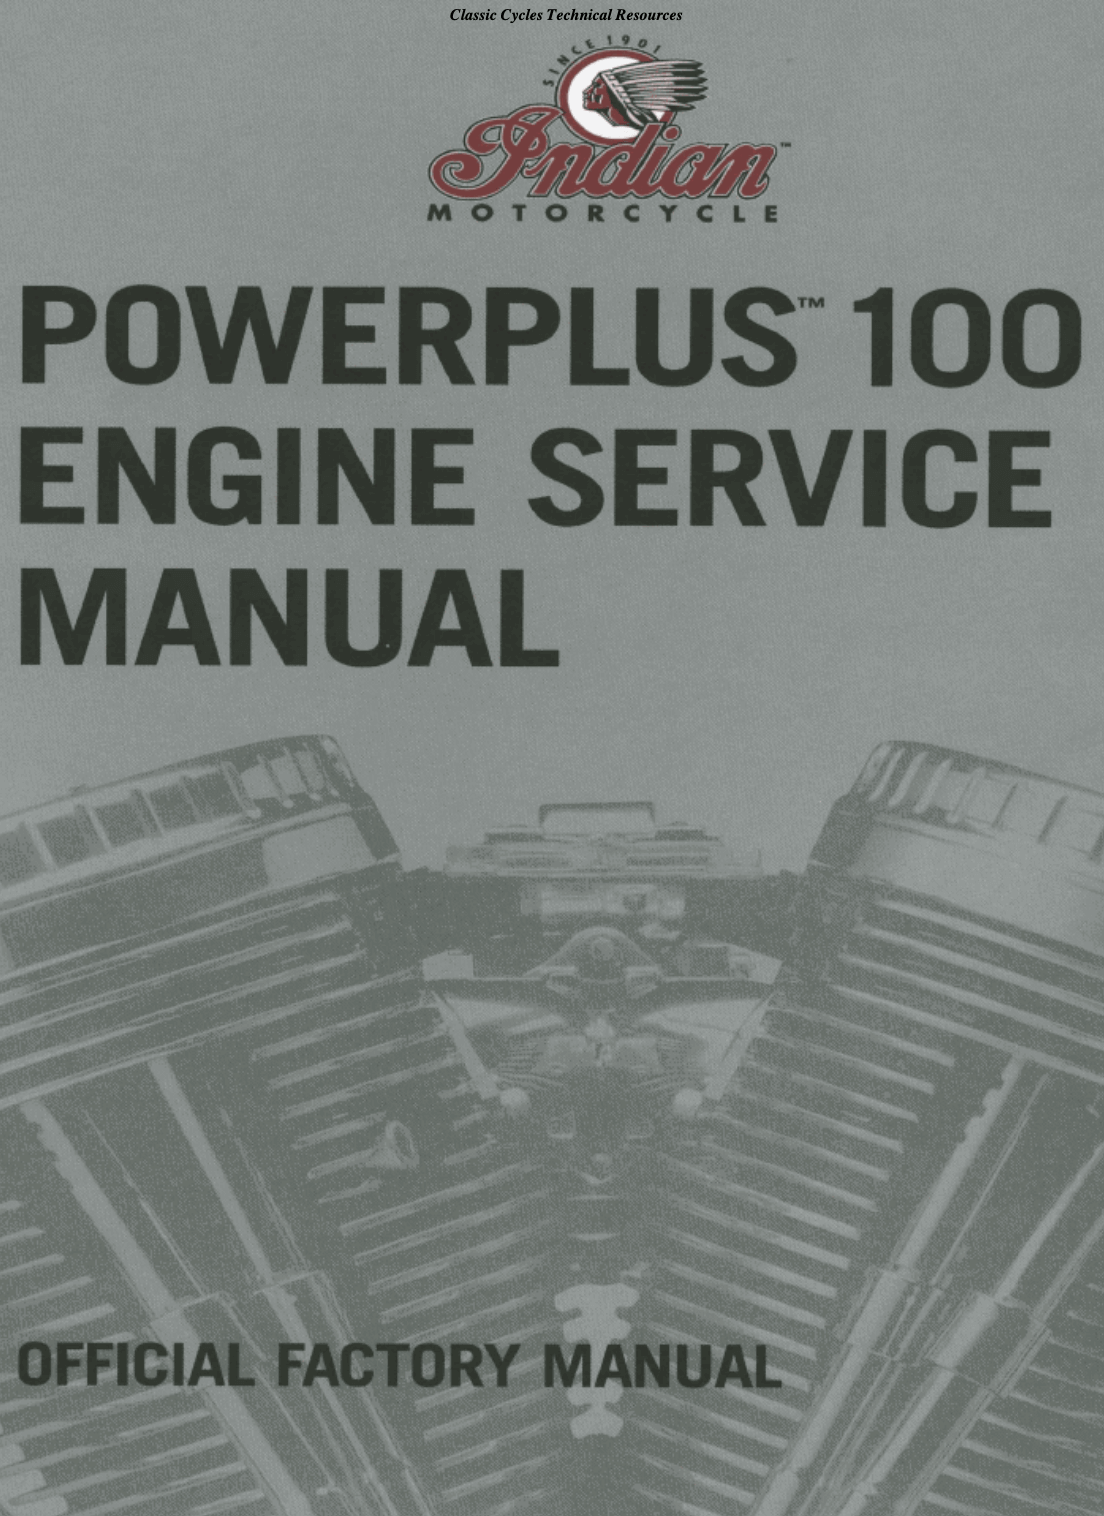 Indian Gilroy Powerplus 100 Engine Factory Manual models 2002-2003 Repair Manual original motorcycle manufacturer's PDF repair manual download